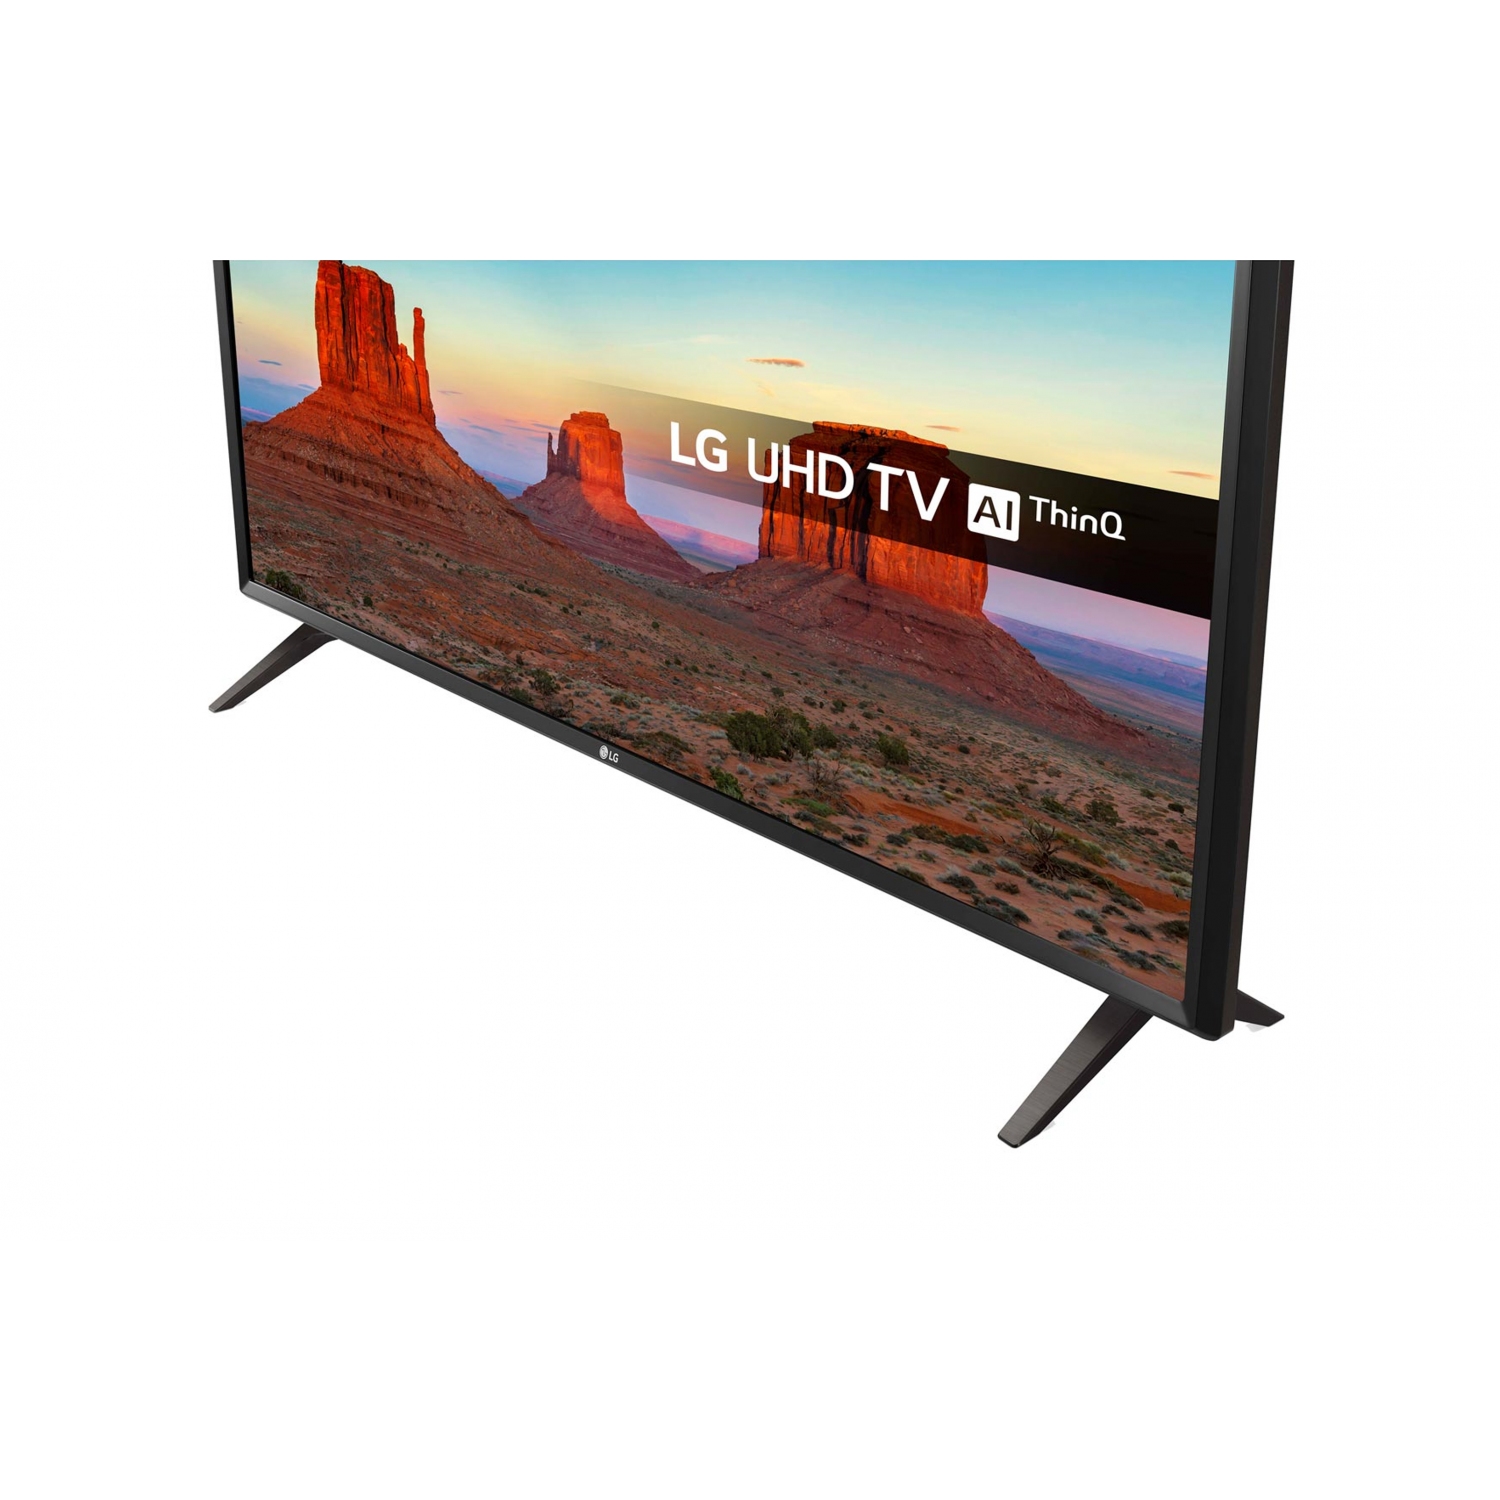 LG 43UN6400 ULTRA HD 4K TV - 1